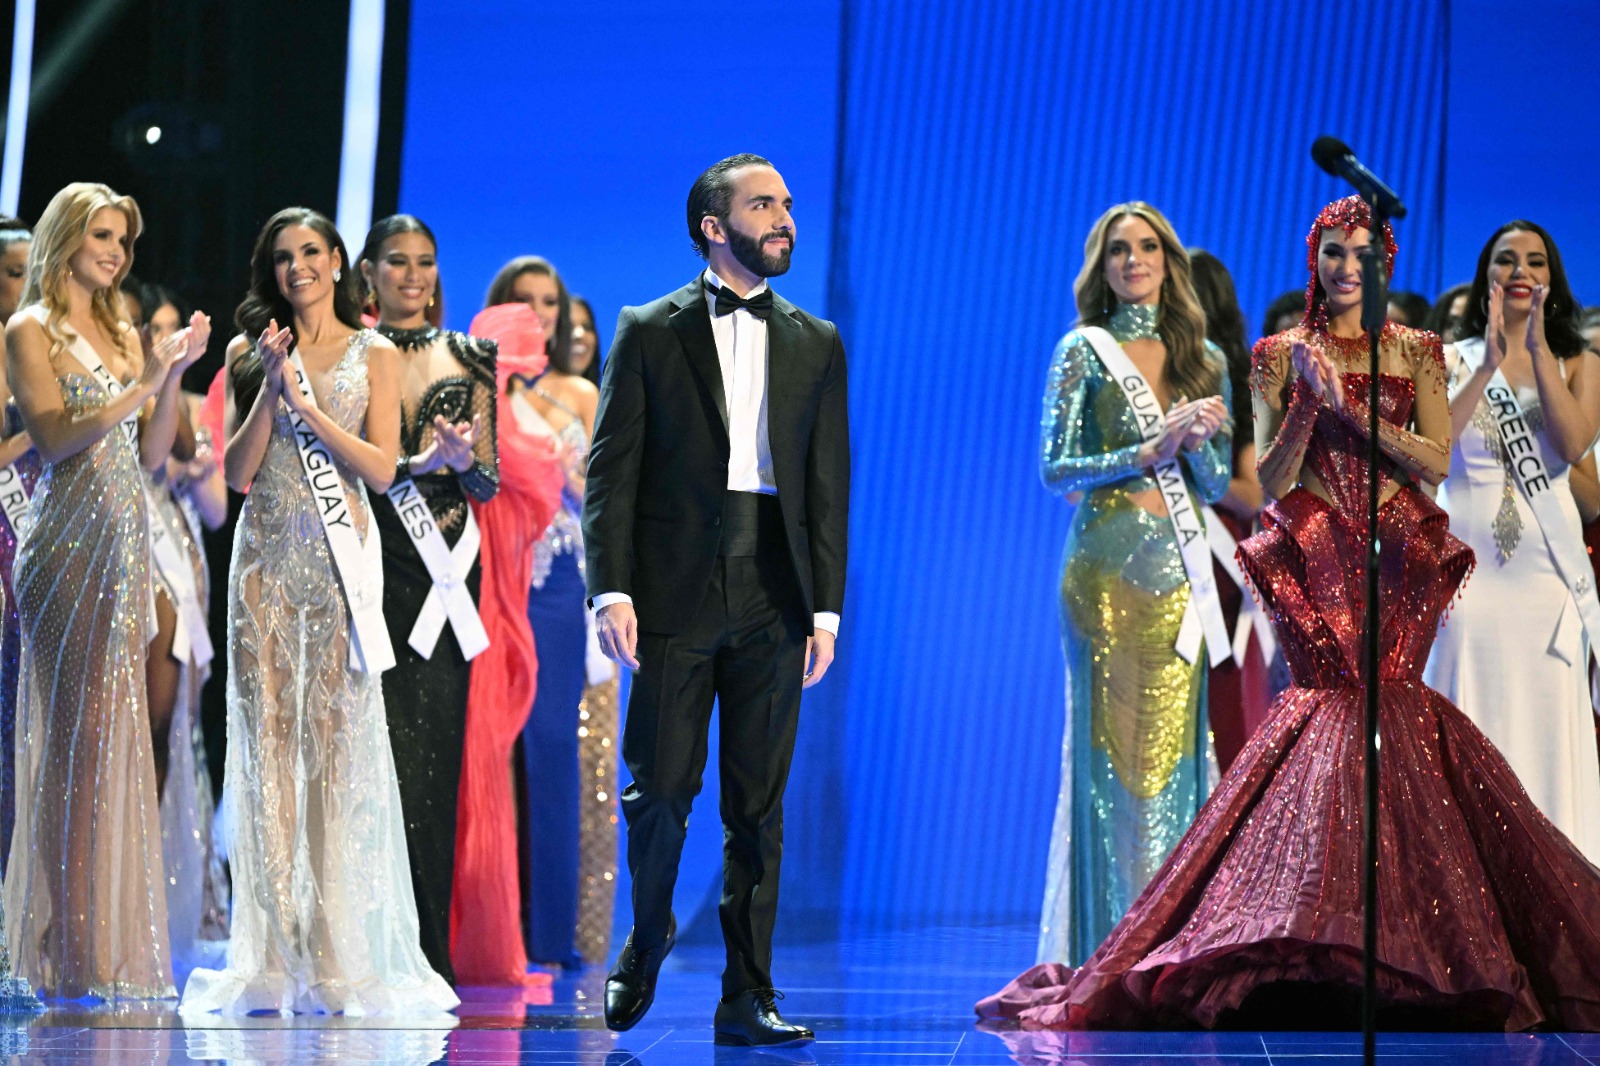 El presidente de El Salvador, Nayib Bukele, durante la ceremonia de Miss Universo 2023. (Foto Prensa Libre: AFP).